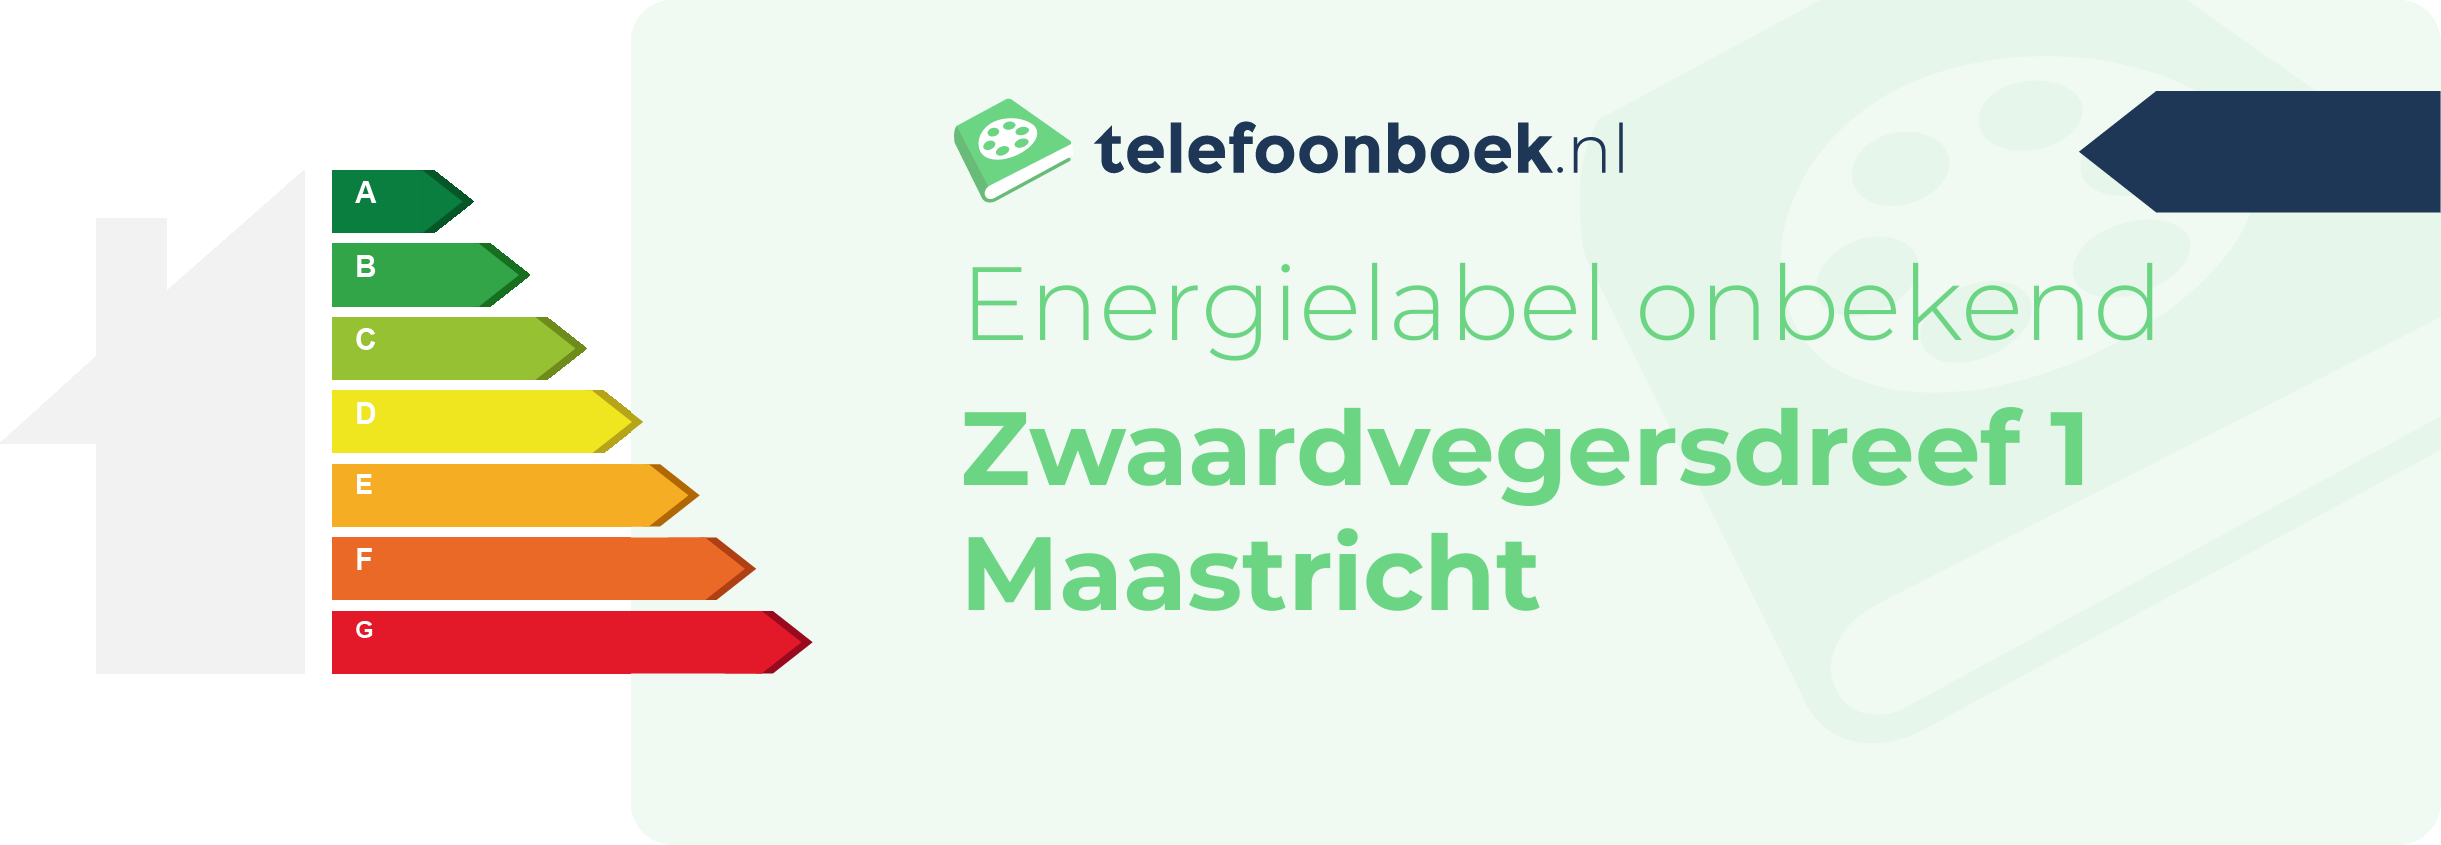 Energielabel Zwaardvegersdreef 1 Maastricht